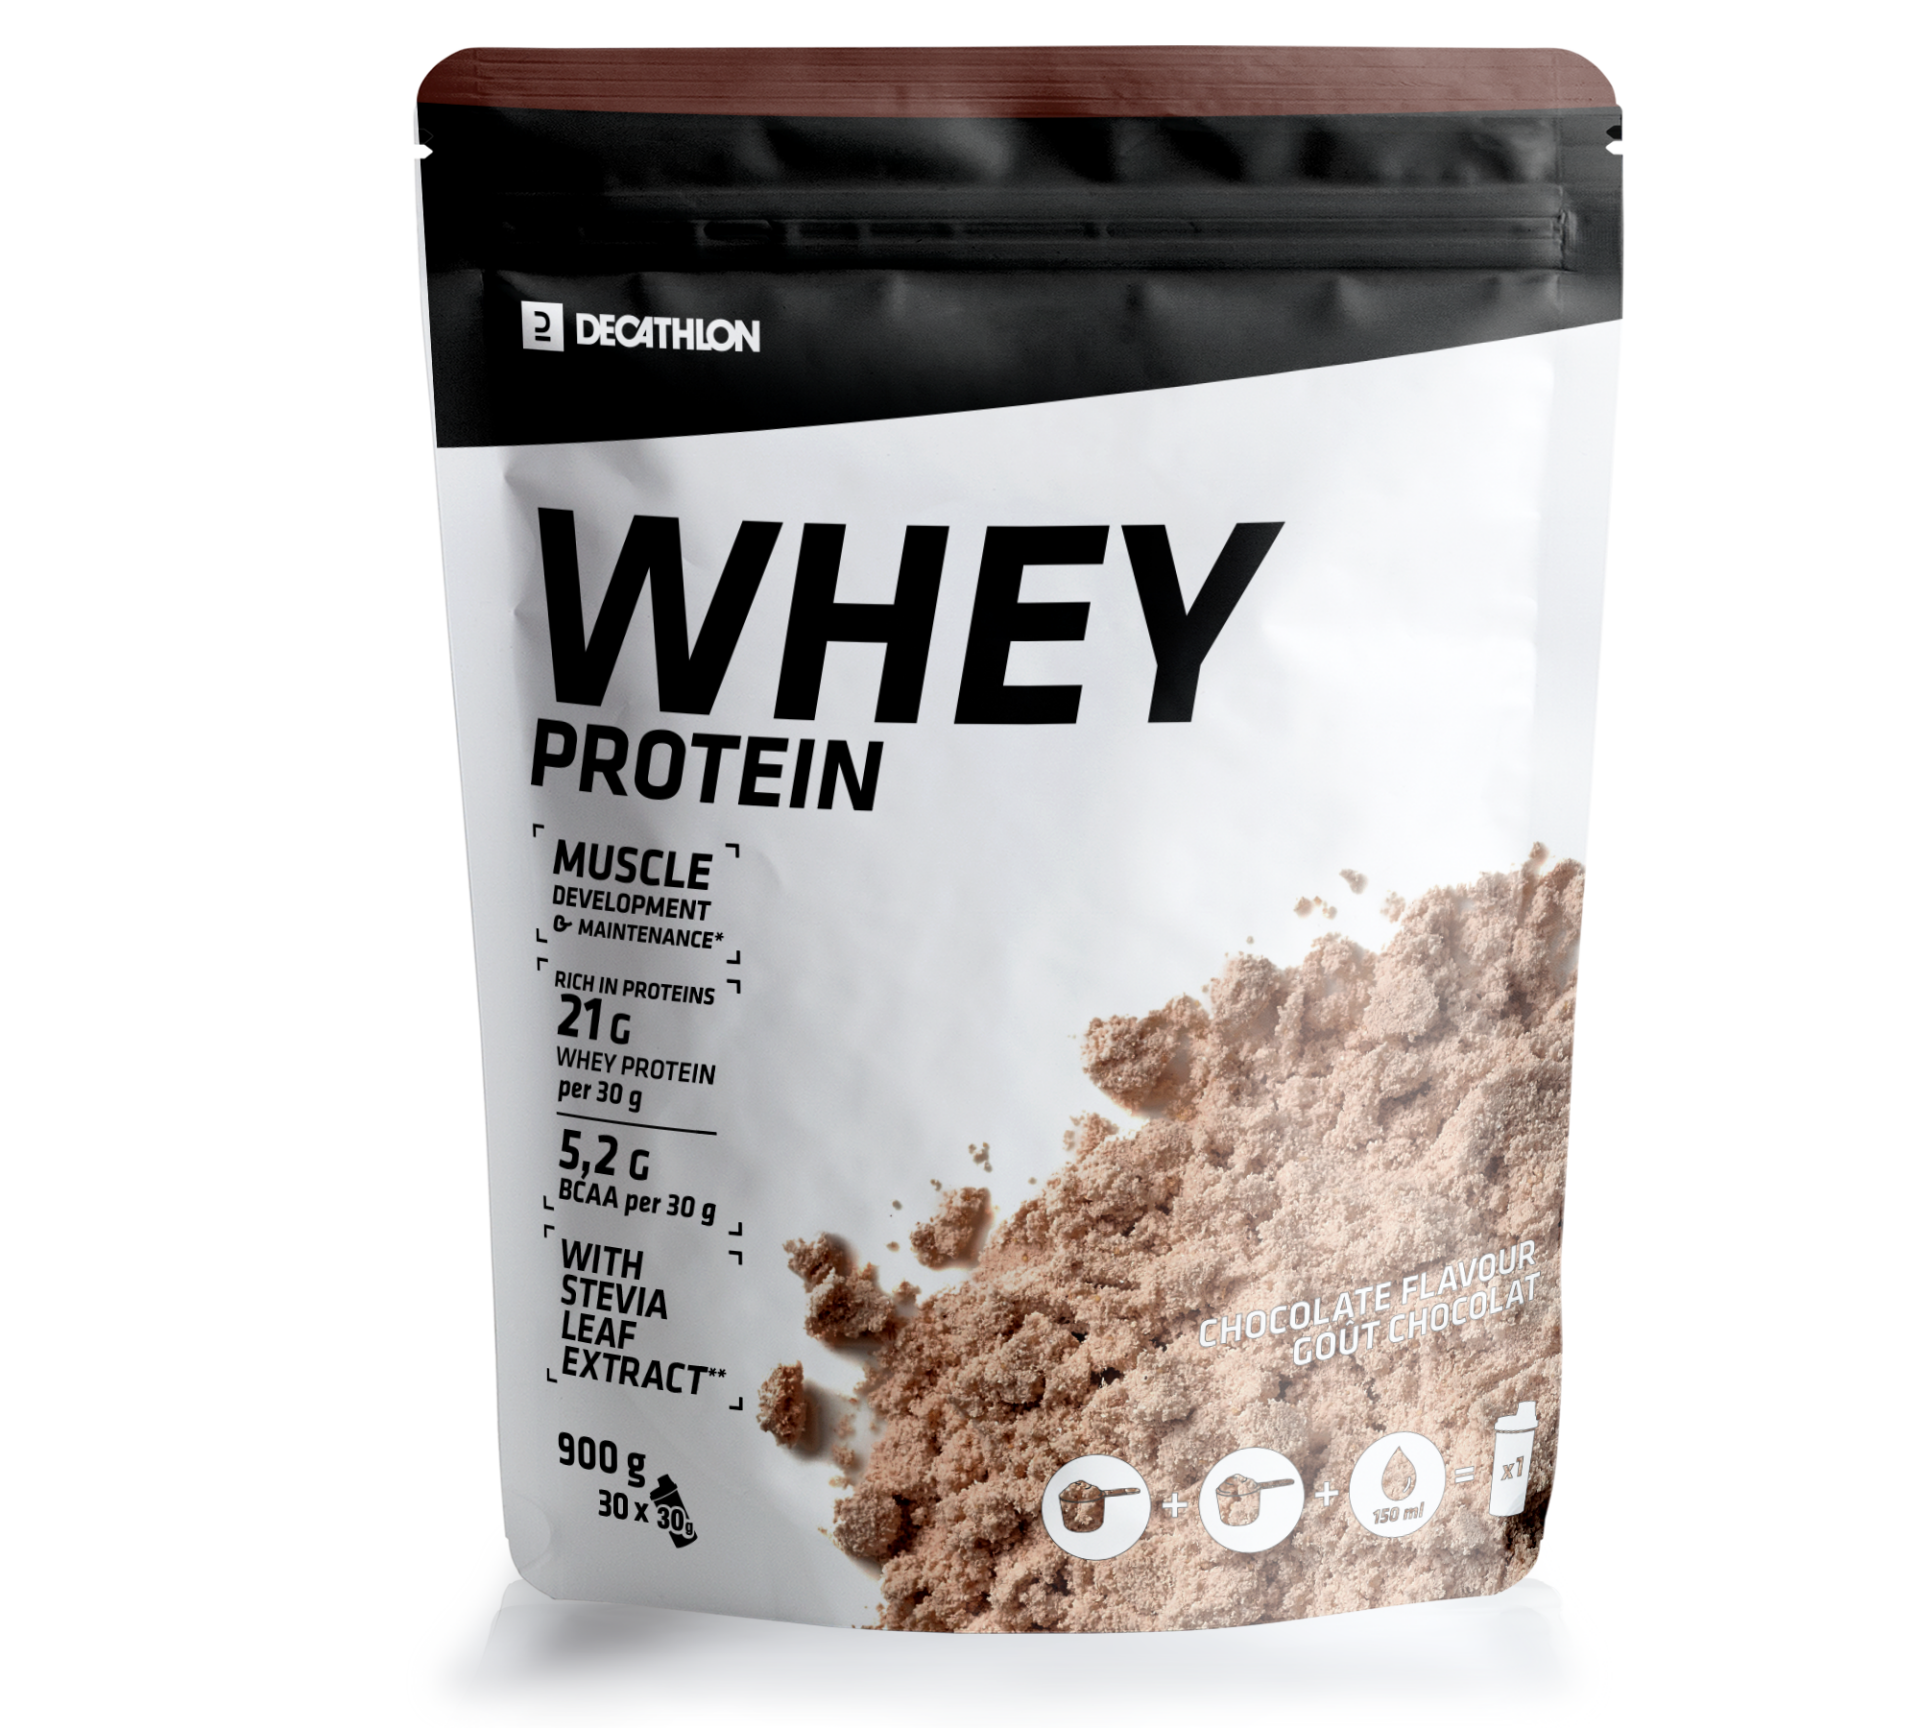 Whey Protein Concentrate Decathlon : la protéine en poudre